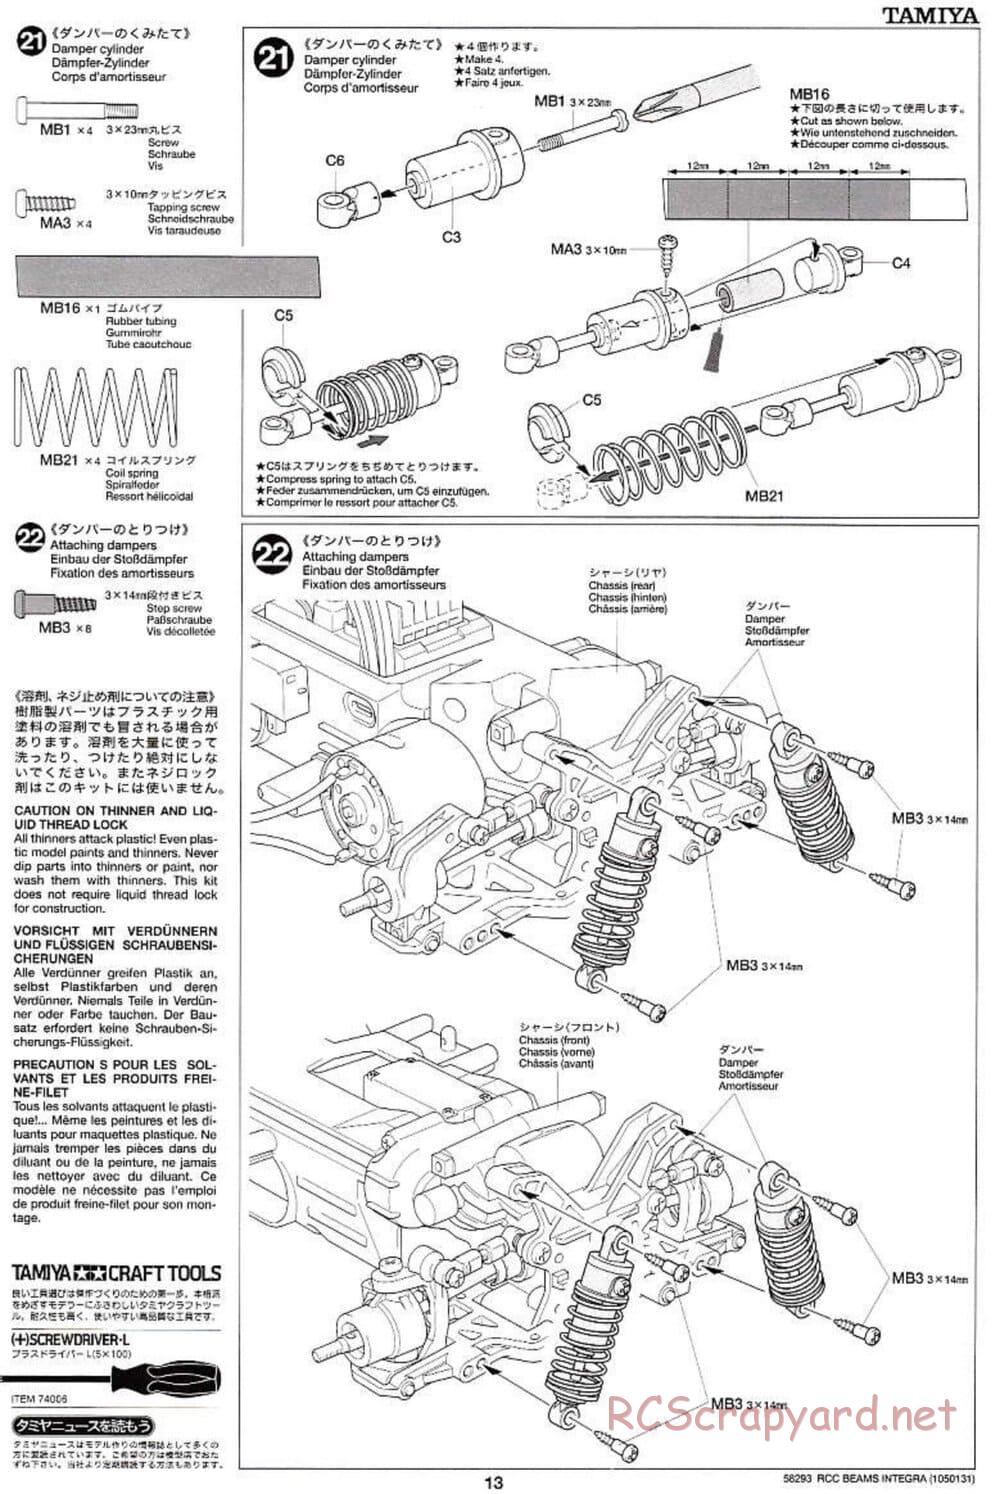 Tamiya - Beams Integra - TL-01 LA Chassis - Manual - Page 13